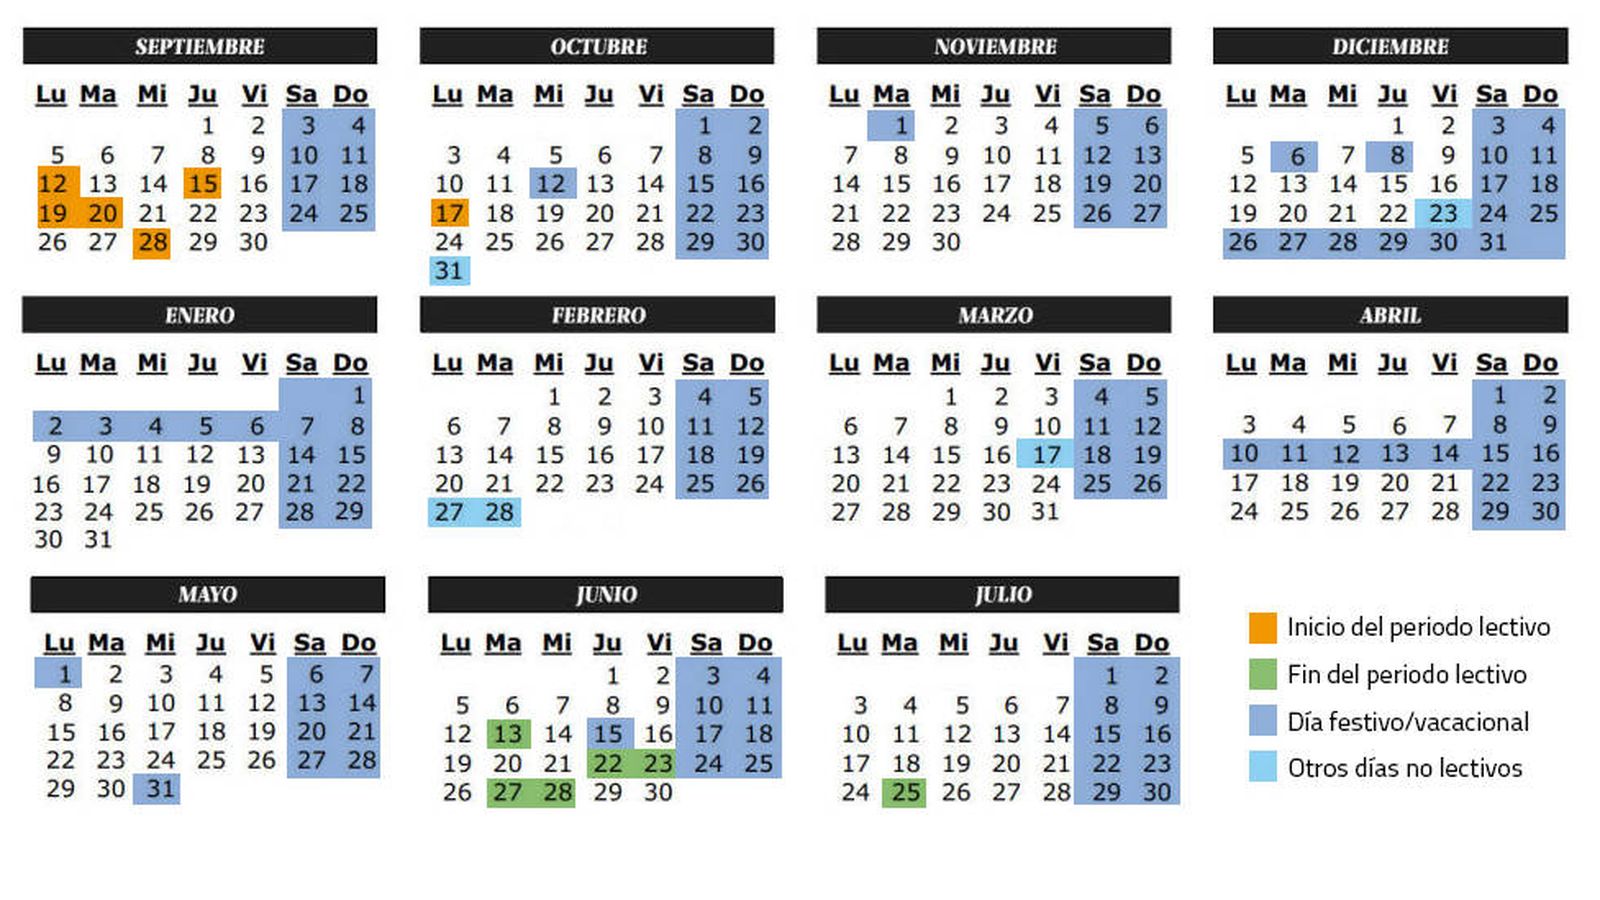 Foto: Calendario escolar del curso 2016-2017 en Castilla-La Mancha (C.Castellón)